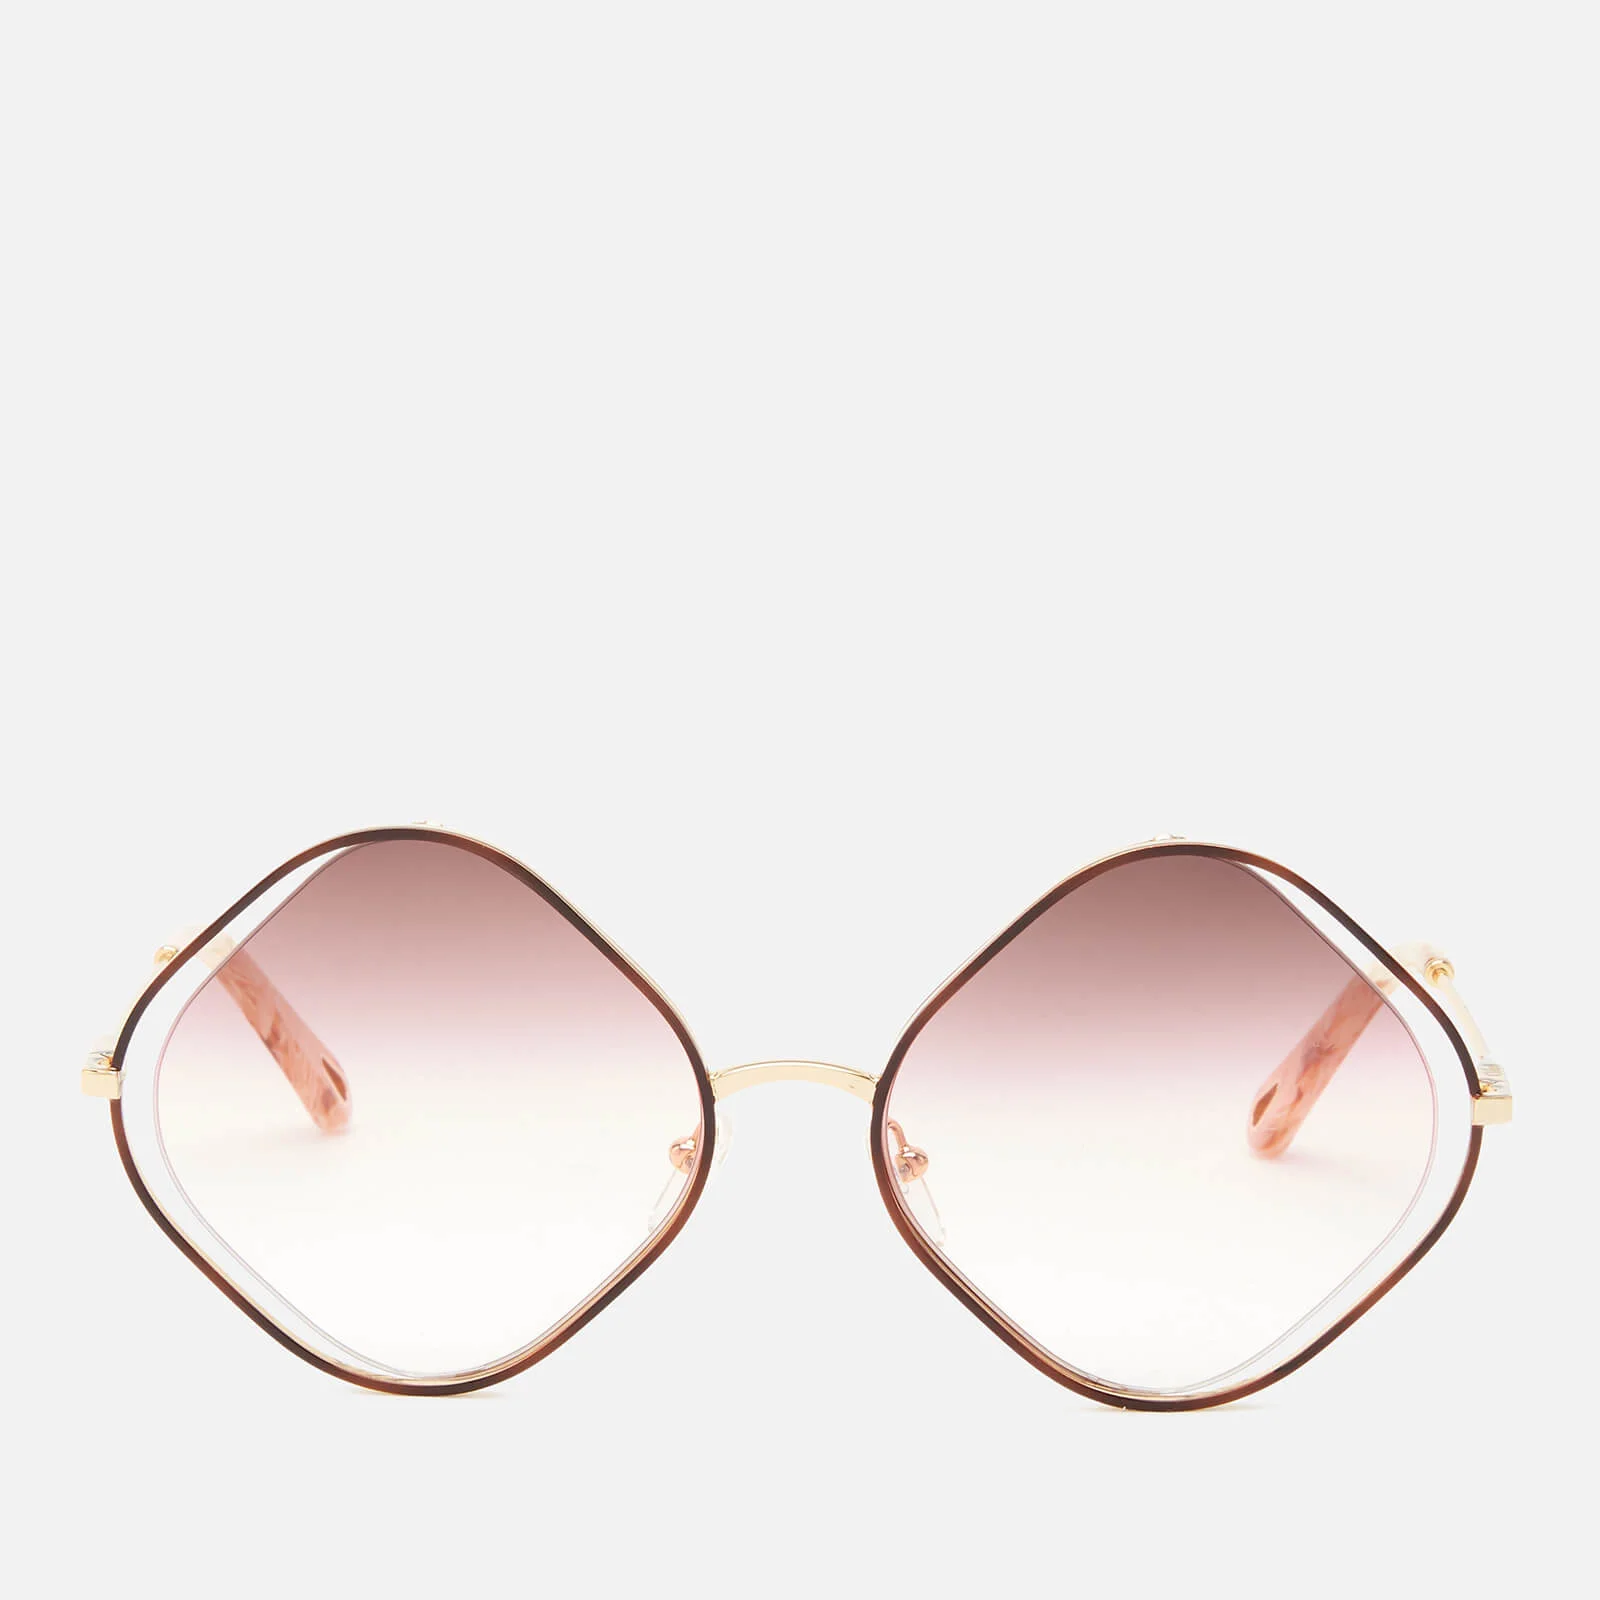 Chloé Women's Poppy Diamond Frame Sunglasses - Havana/Brown Rose Sand Image 1